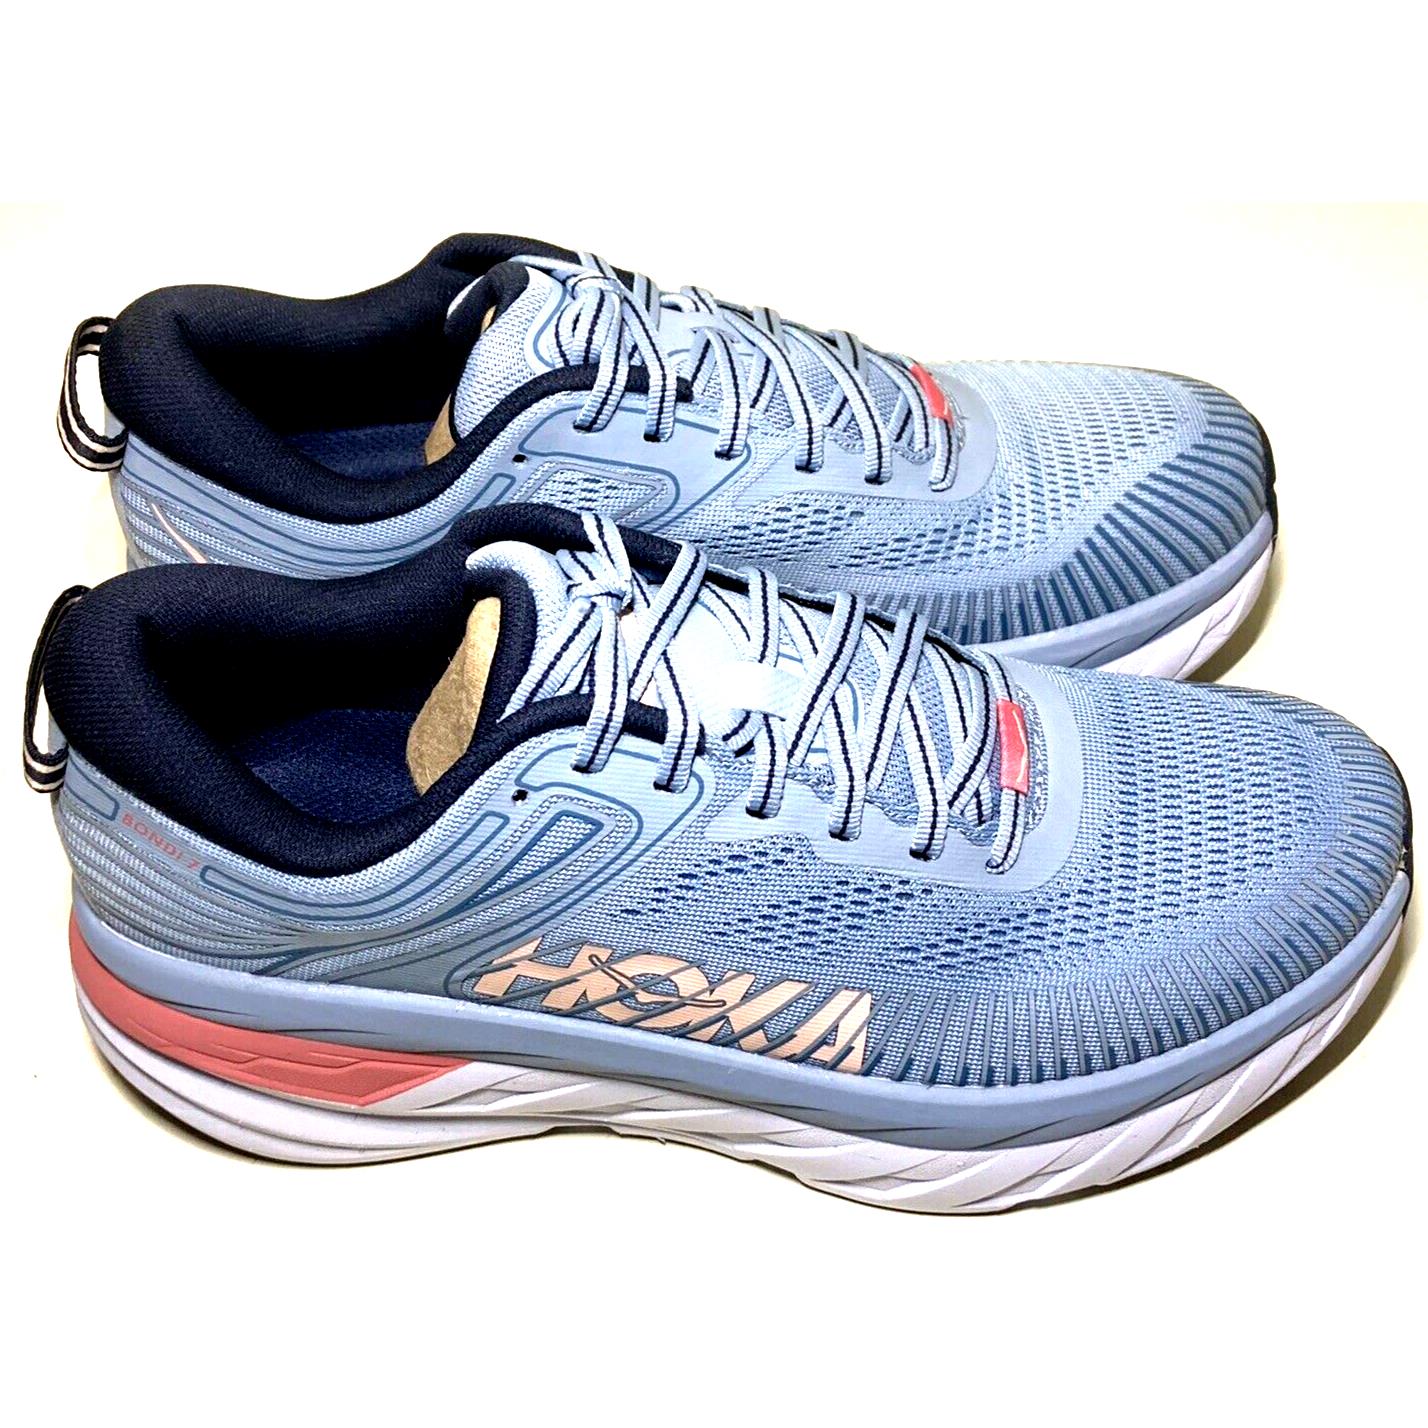 Hoka One One Womens Size 8.5 Bondi 7 Running Shoe Blue Fog/blue Shad Sneaker